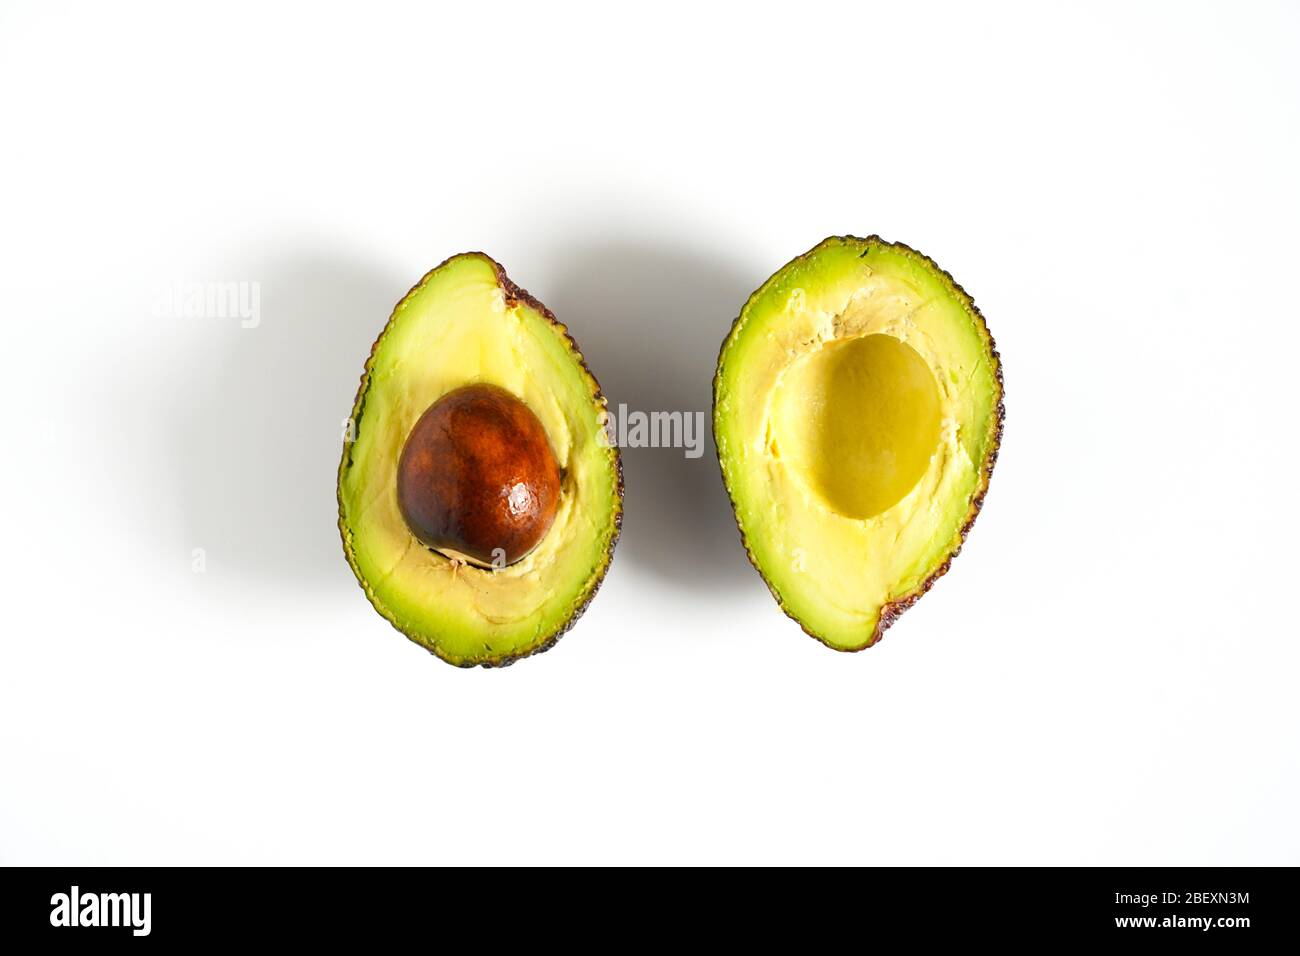 Ein Avocado, das in zwei Hälften geschnitten wurde, um den Kern vor einem weißen Hintergrund zu enthüllen Stockfoto